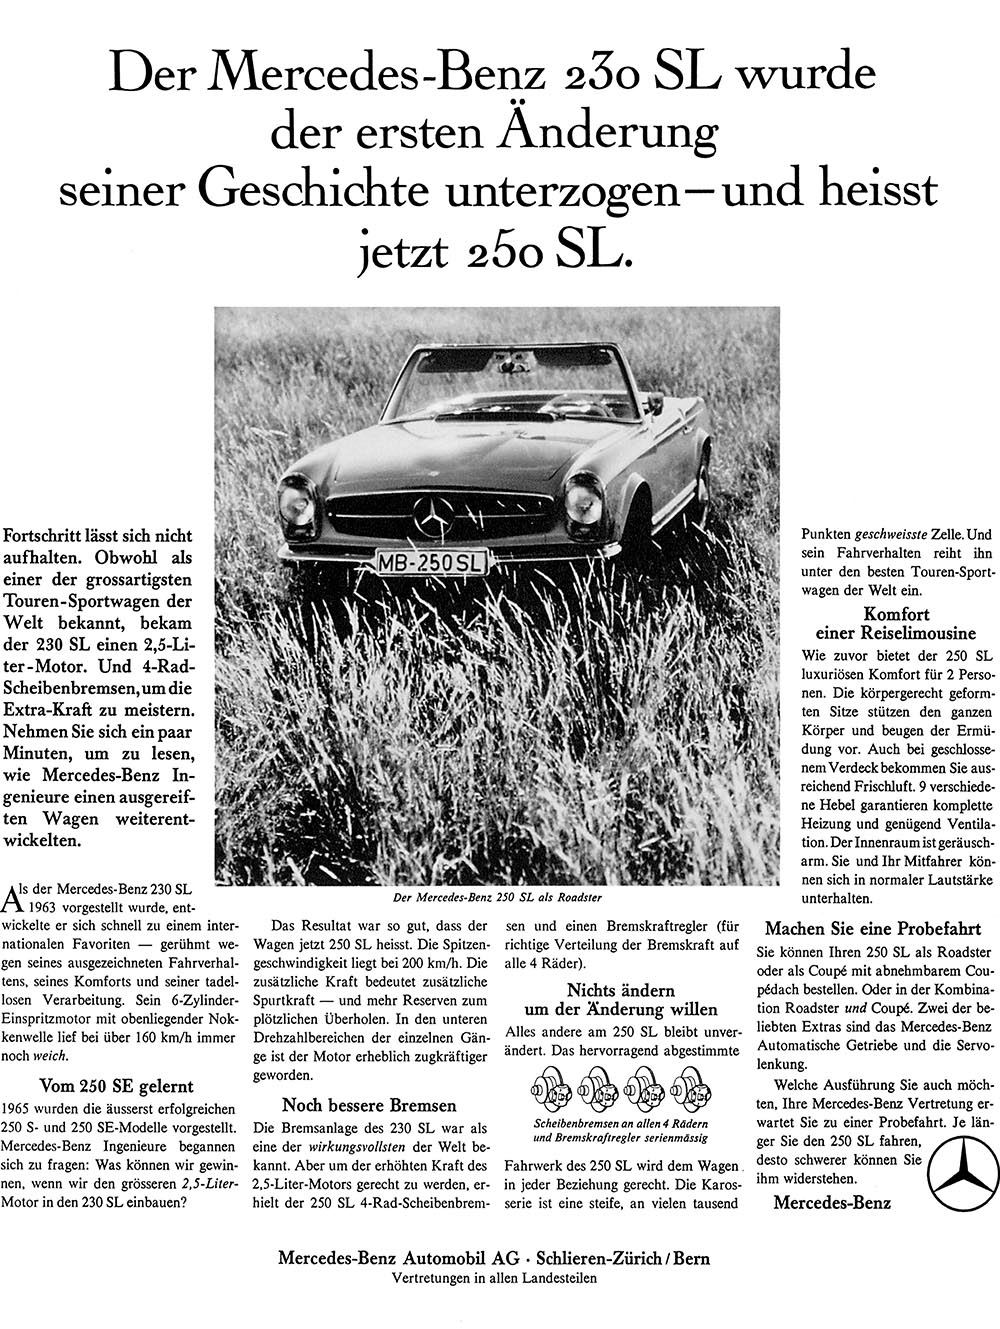 Werbung für den Mercedes 250 SL anno 1967.